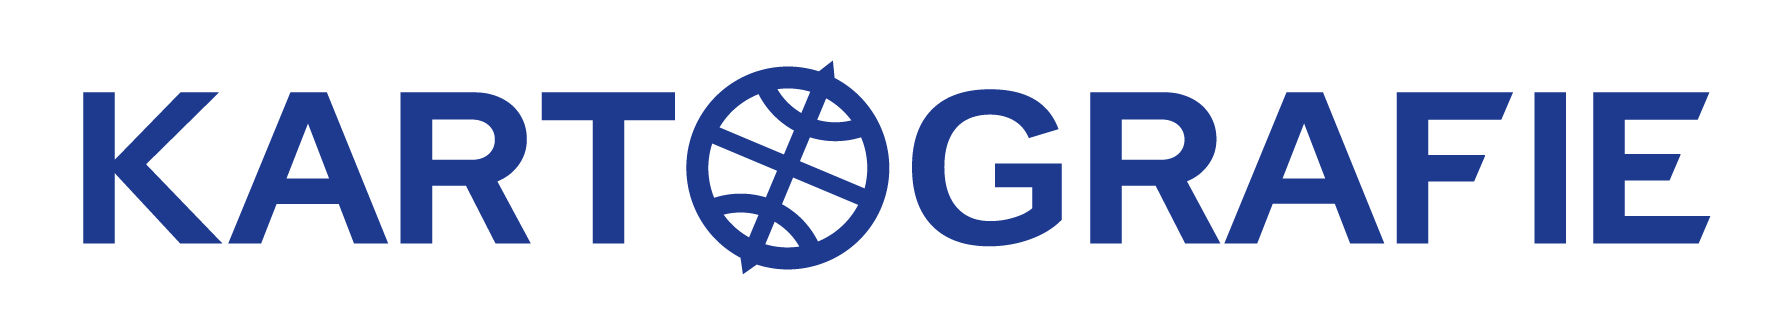 Kartografie Praha logo